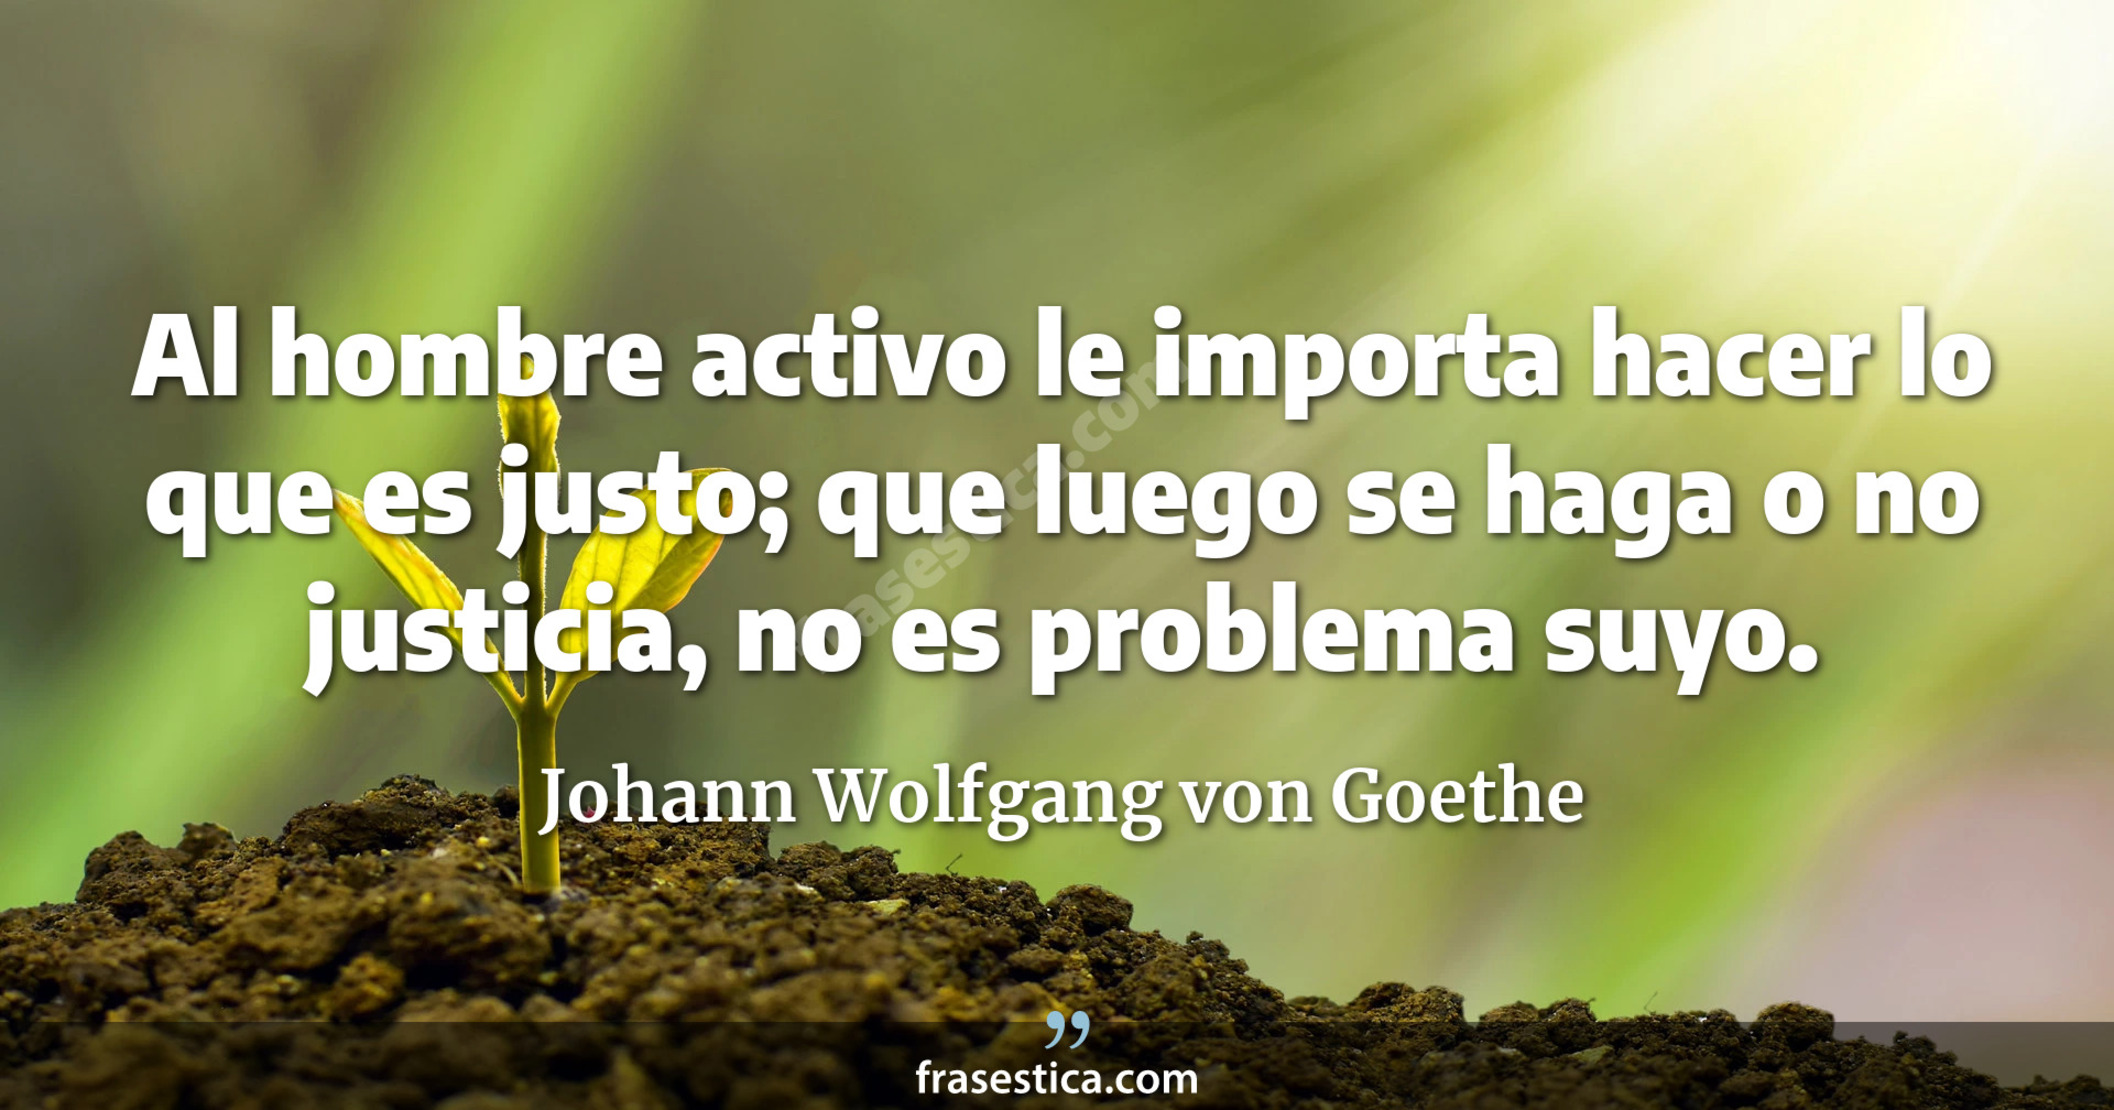 Al hombre activo le importa hacer lo que es justo; que luego se haga o no justicia, no es problema suyo. - Johann Wolfgang von Goethe